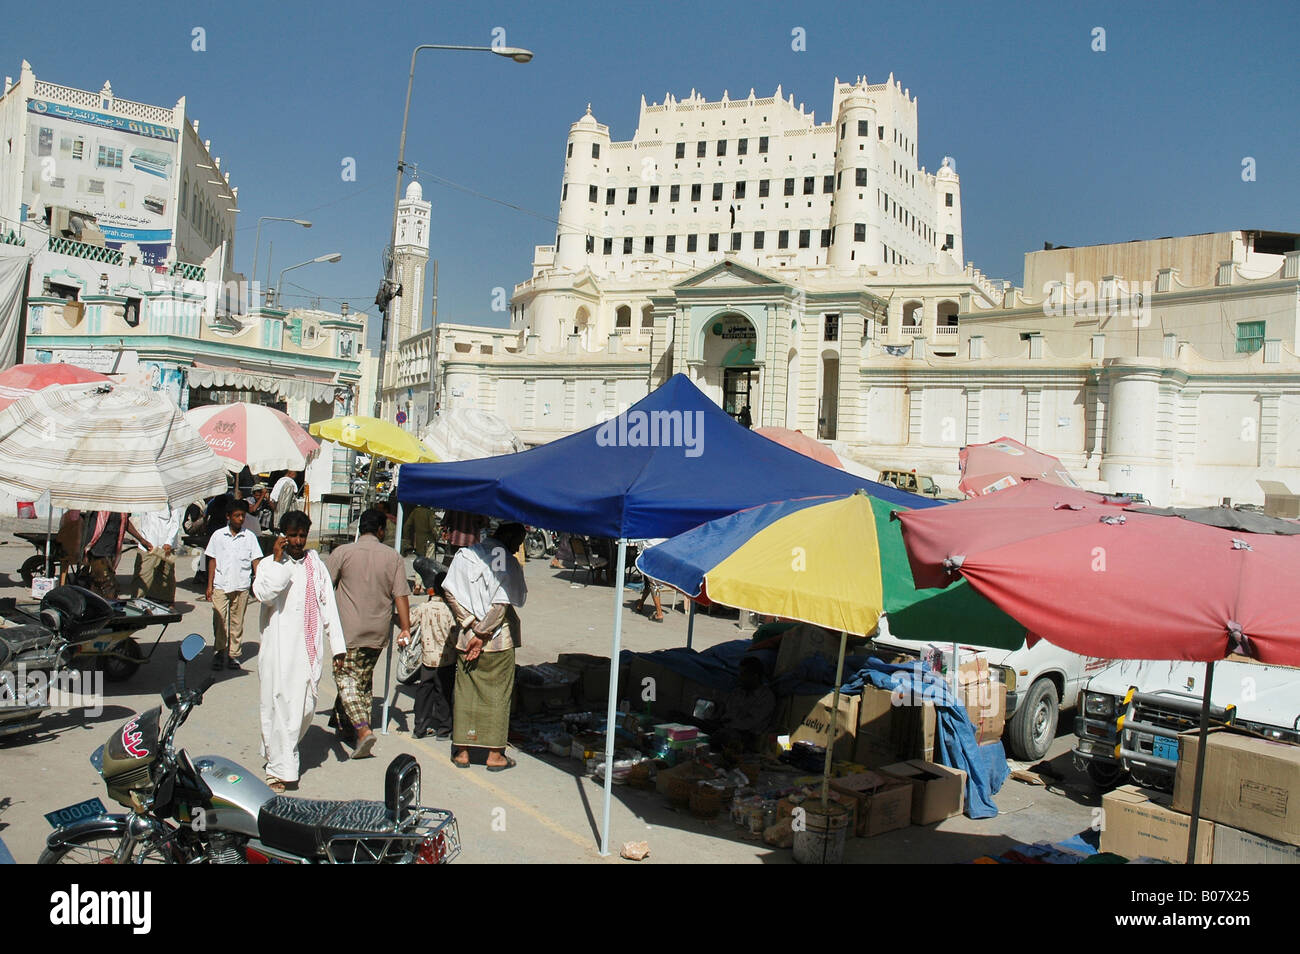 Dans Seiyoun, capitale de la région du Yémen Hadhramawt, le palais du Sultan, maintenant un musée, brille au-dessus d'un marché Banque D'Images